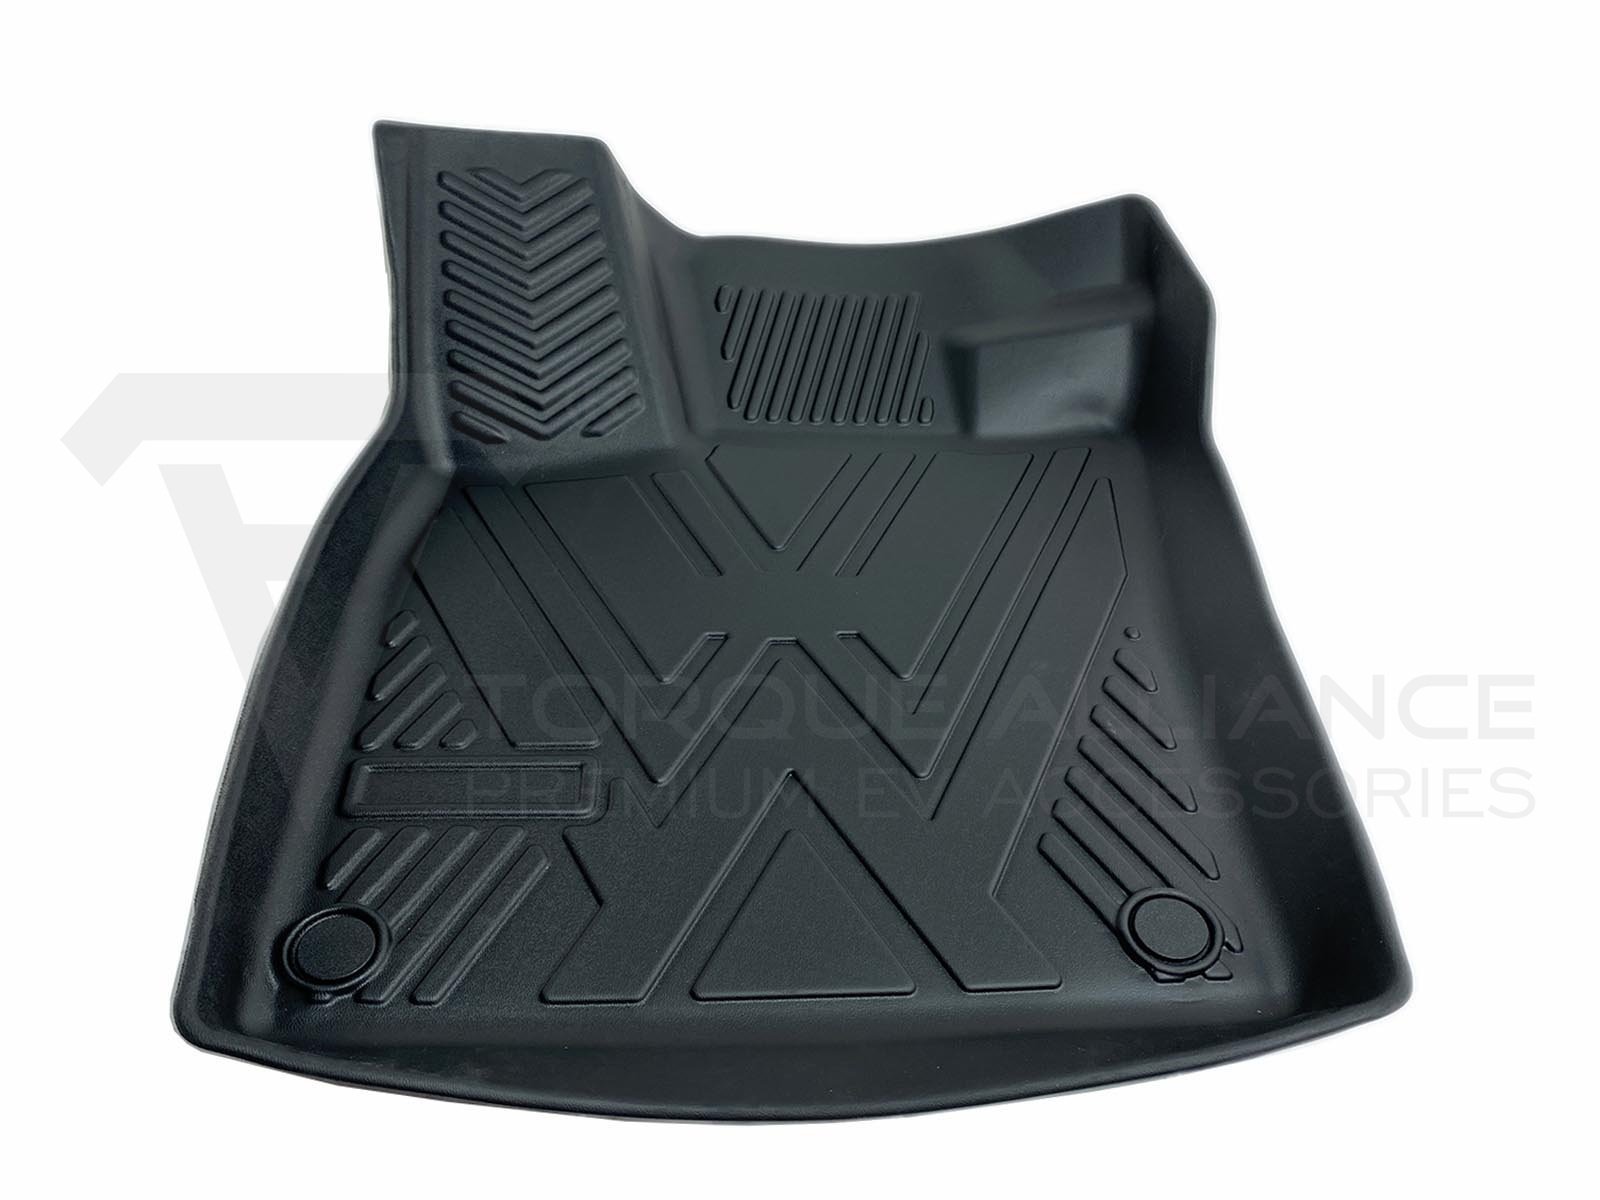 VW ID 3_Premium Rubber 3D All Weather Interior Fußmatten mit erhöhtem Rand, Linkslenker - Torque Alliance